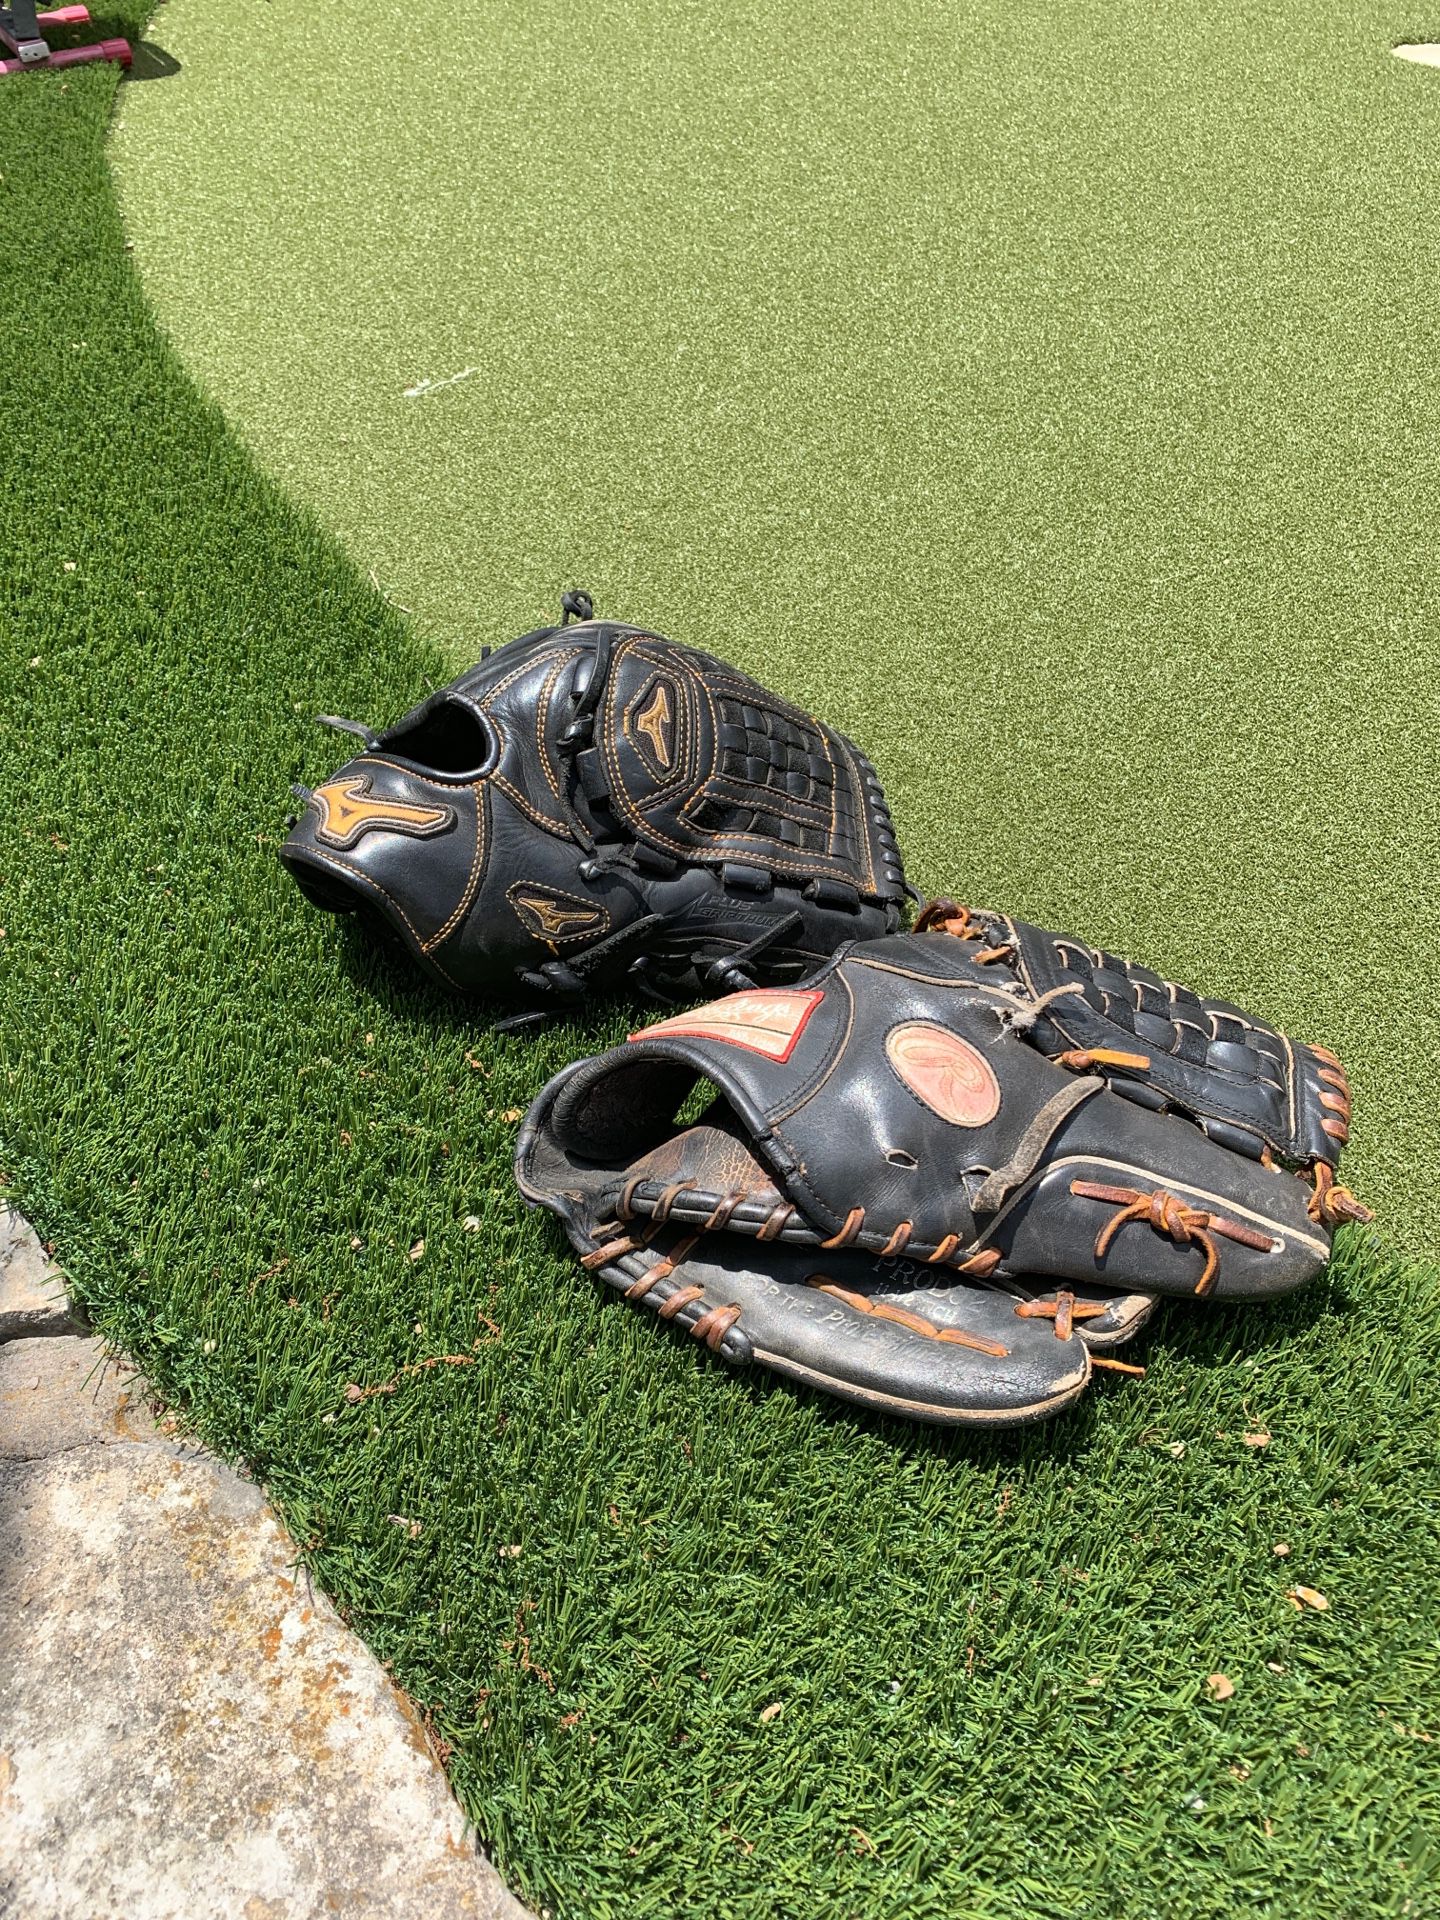 Rawlings 11.75 & Mizuno 12” baseball glove